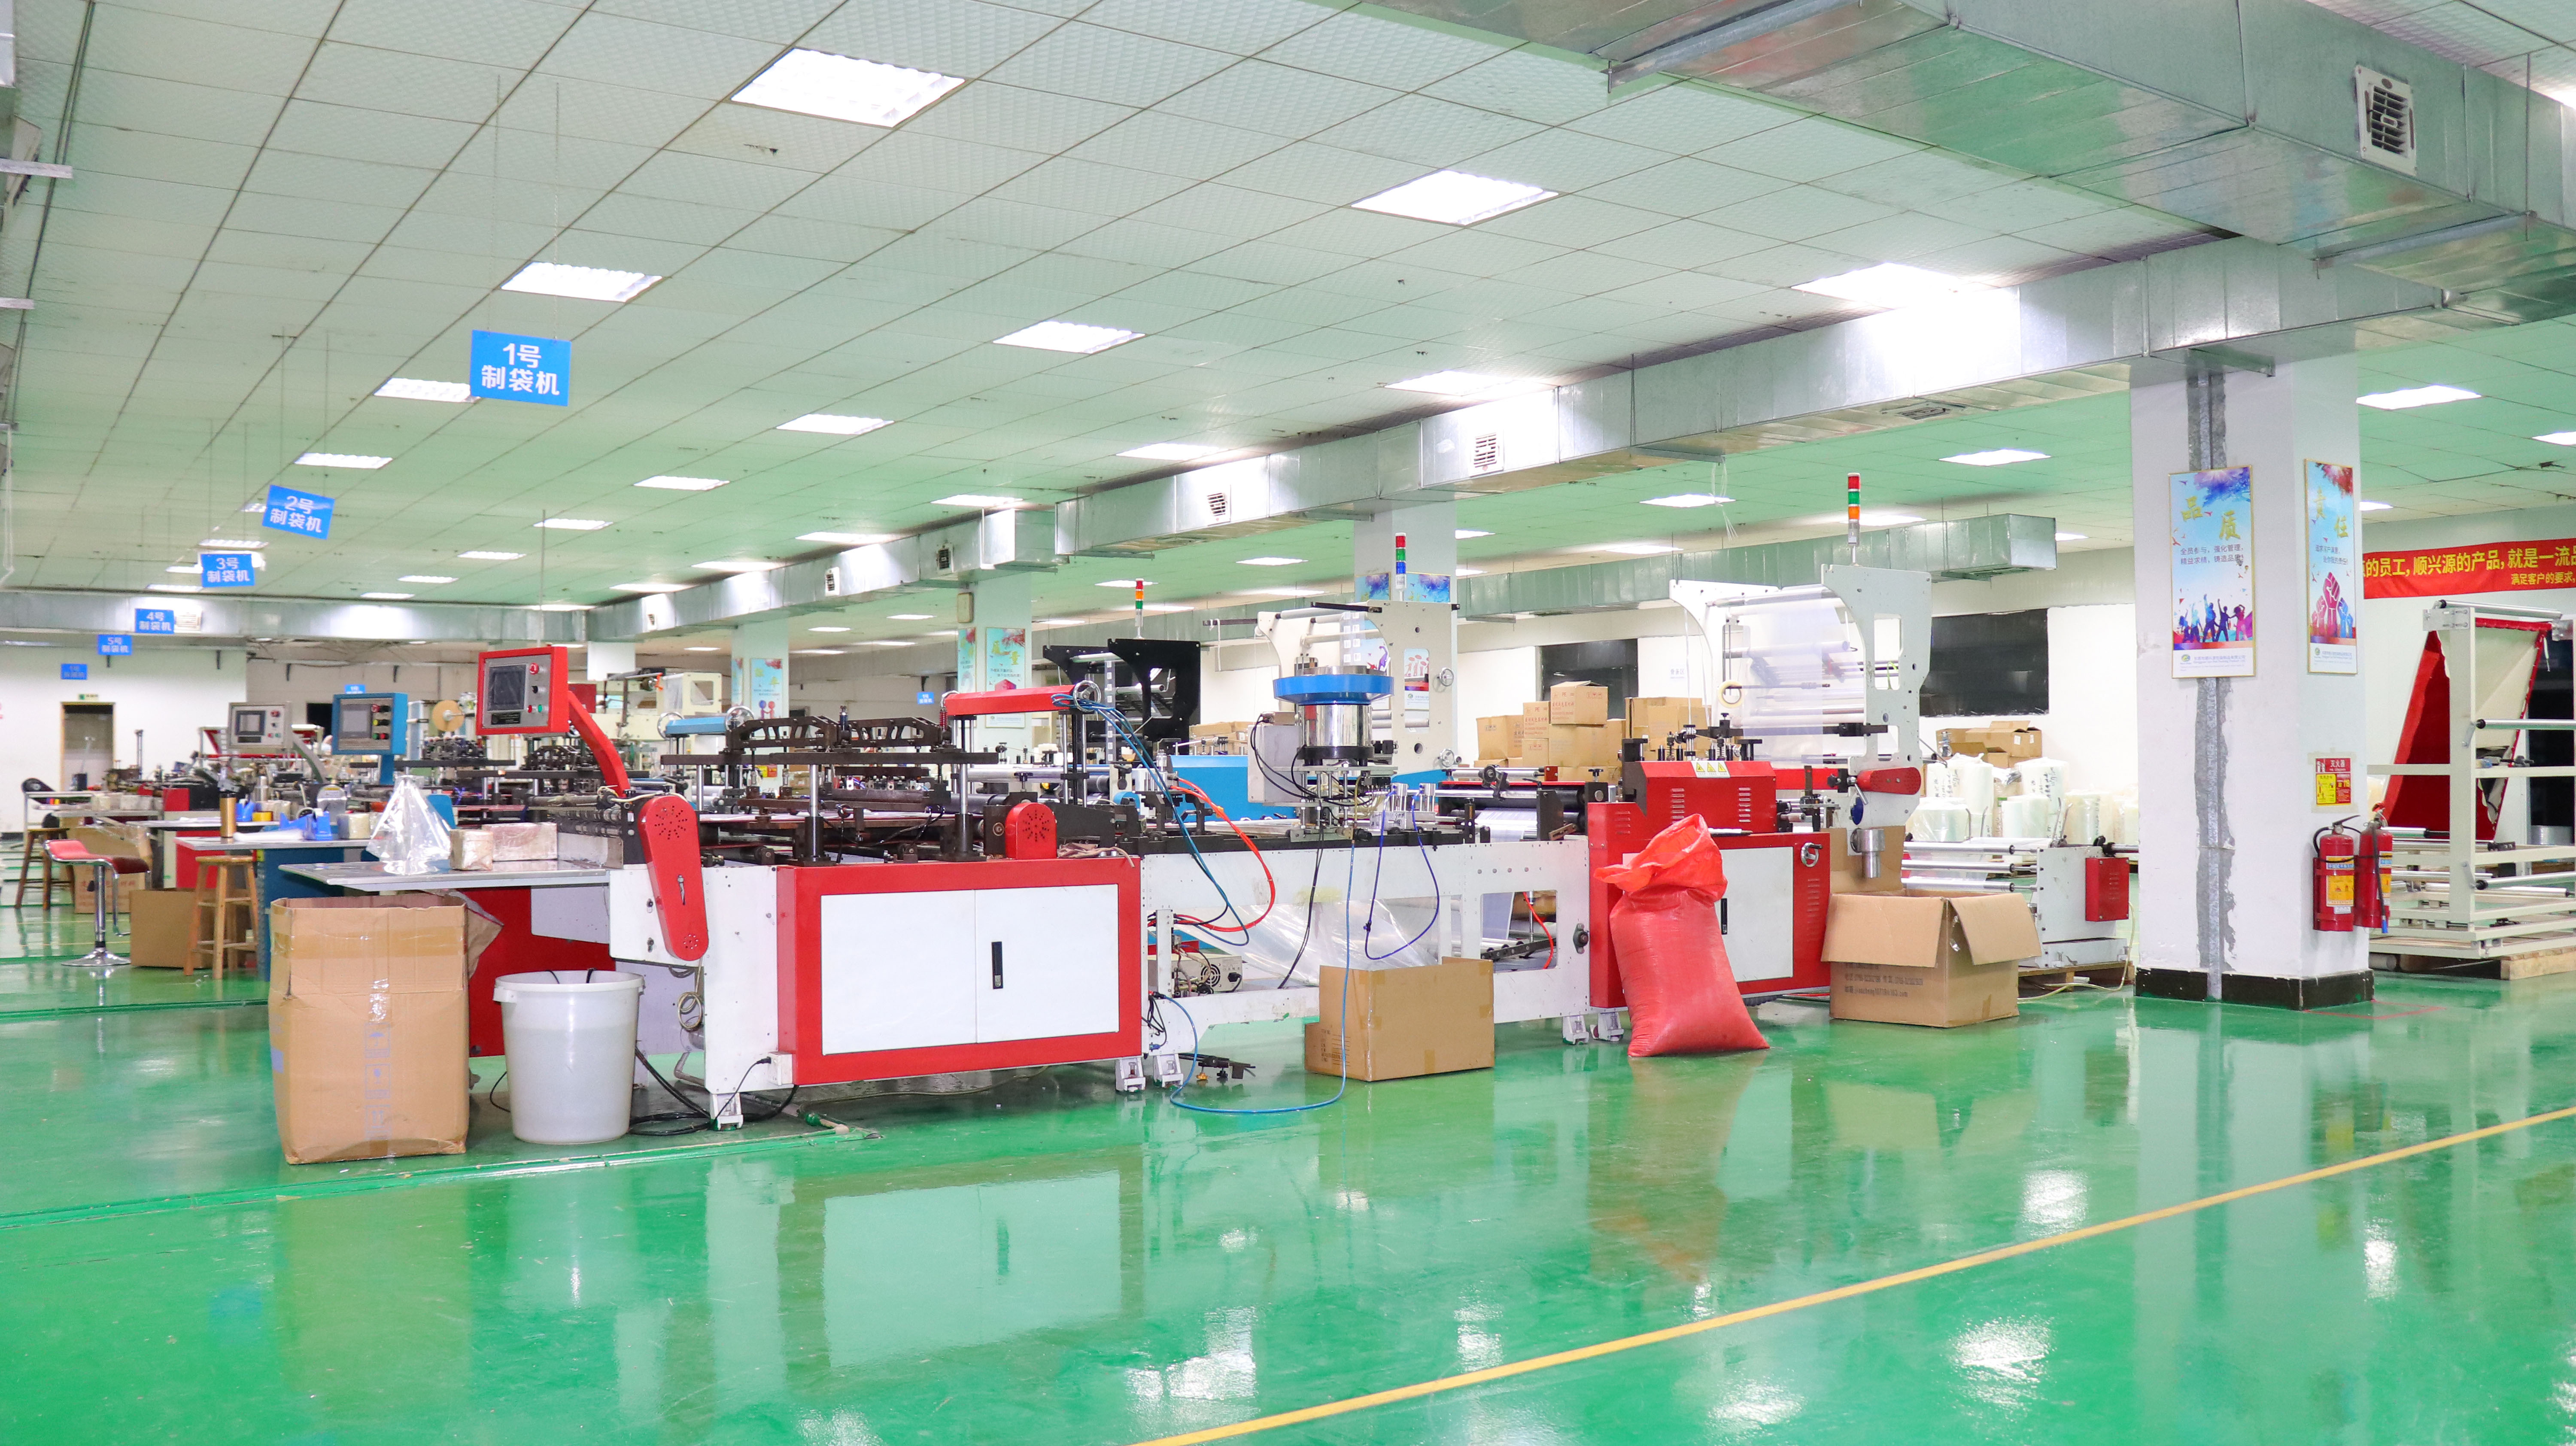 热烈祝贺东莞市顺兴源包装制品有限公司顺利通过ISO9001:2015质量管理体系认证